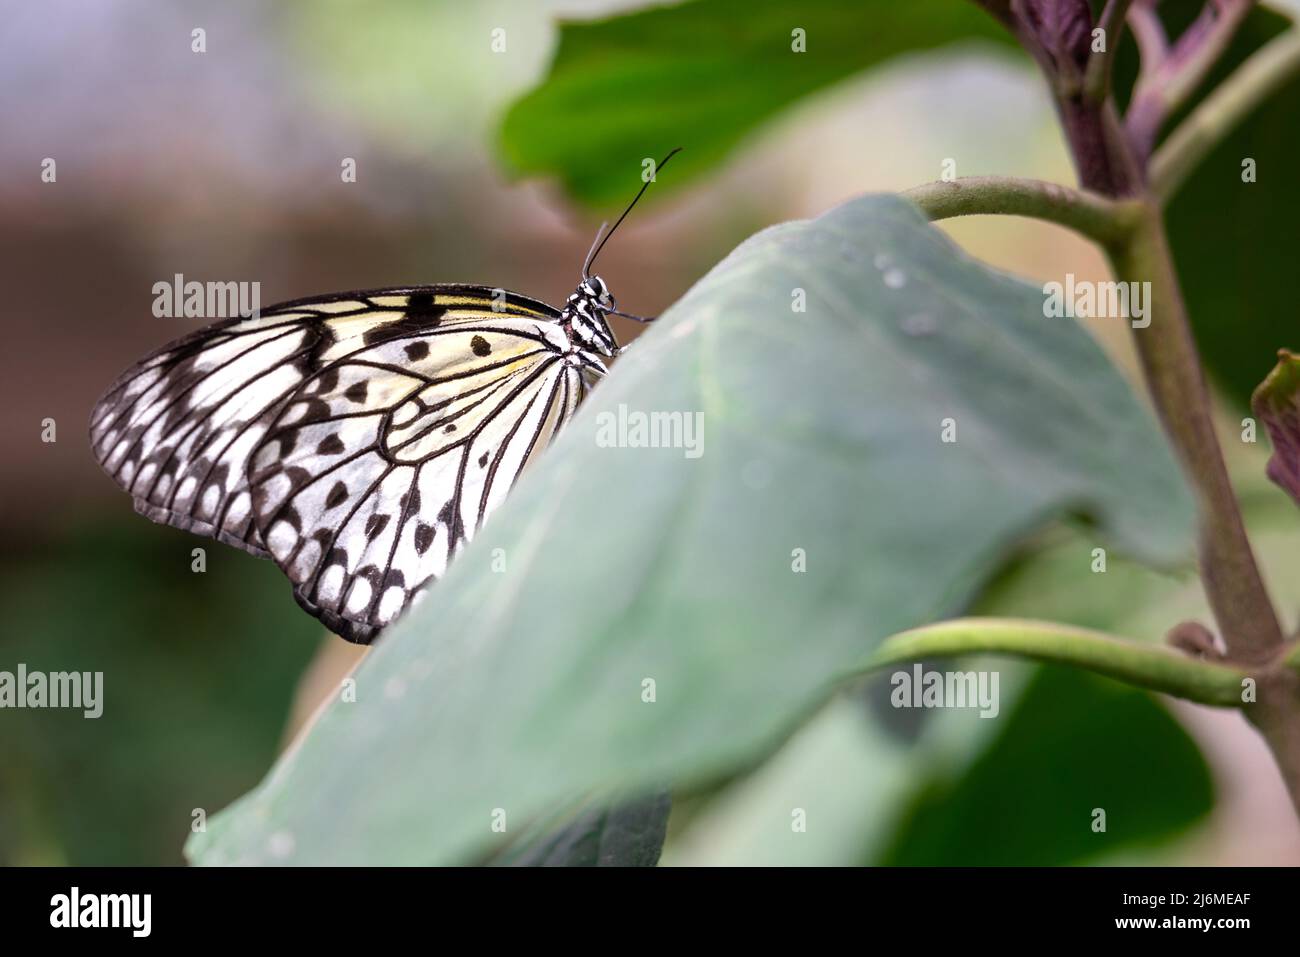 Gros plan sur le côté d'un papillon en papier cerf-volant perché sur une feuille verte sur un fond de bokeh Banque D'Images